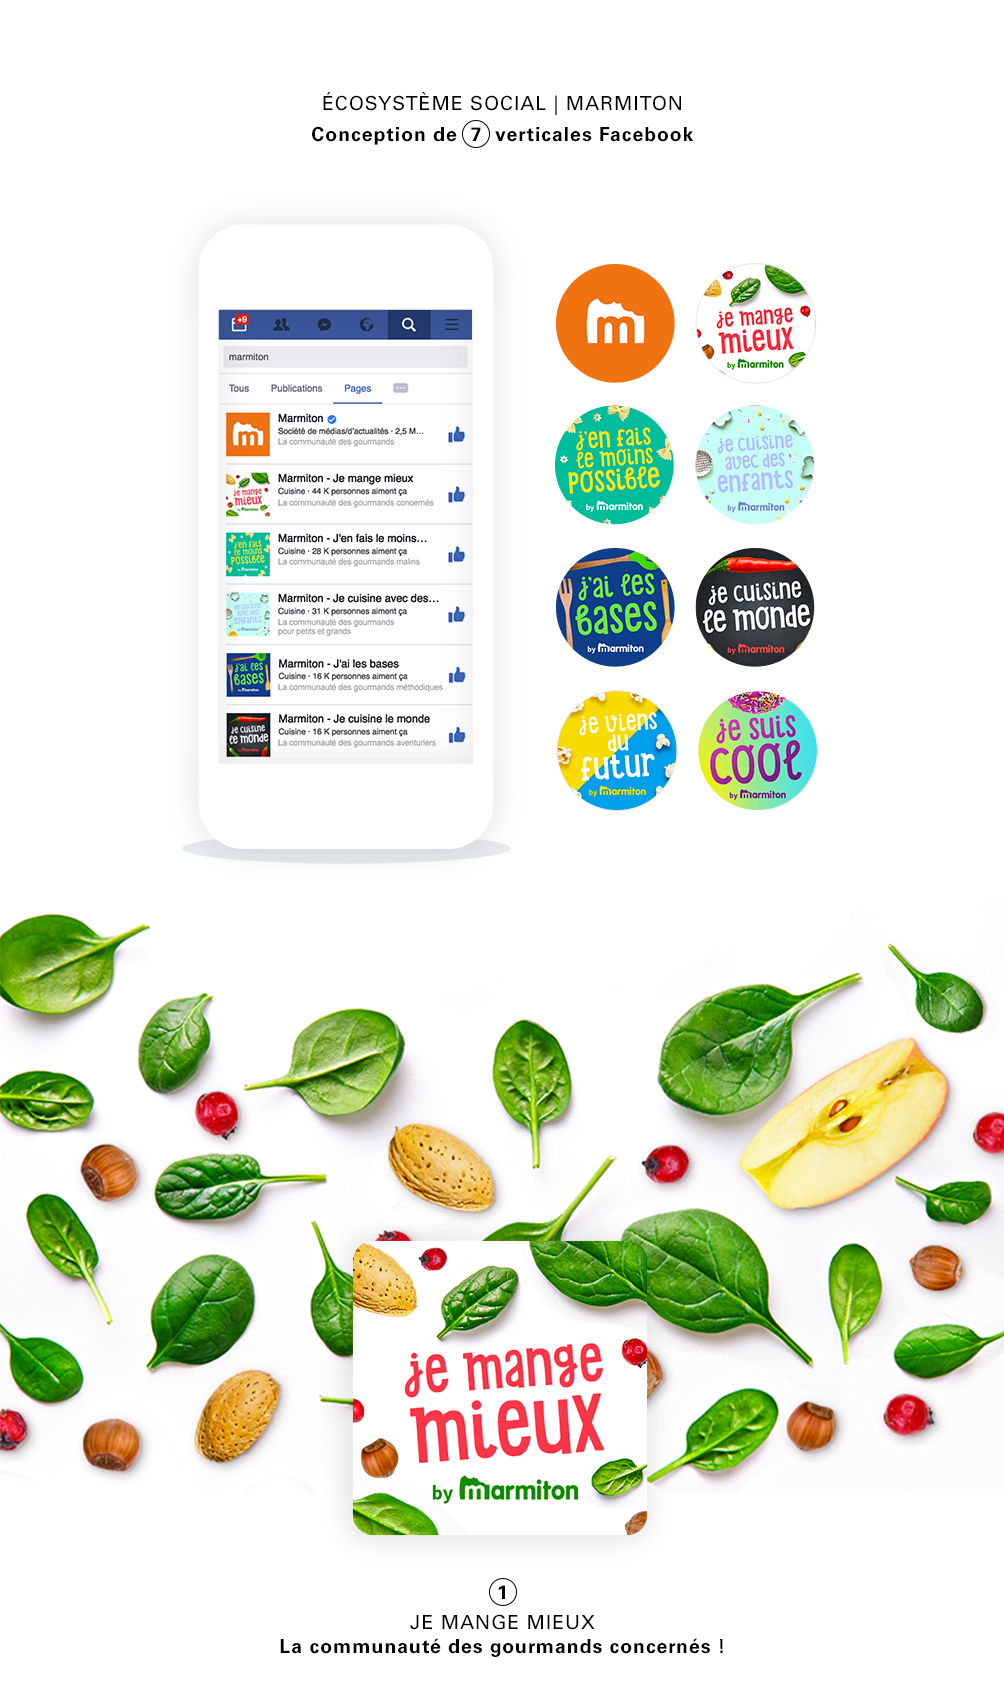 Food  recipe facebook animation  motion vegetables healthy social media social networks réseaux sociaux